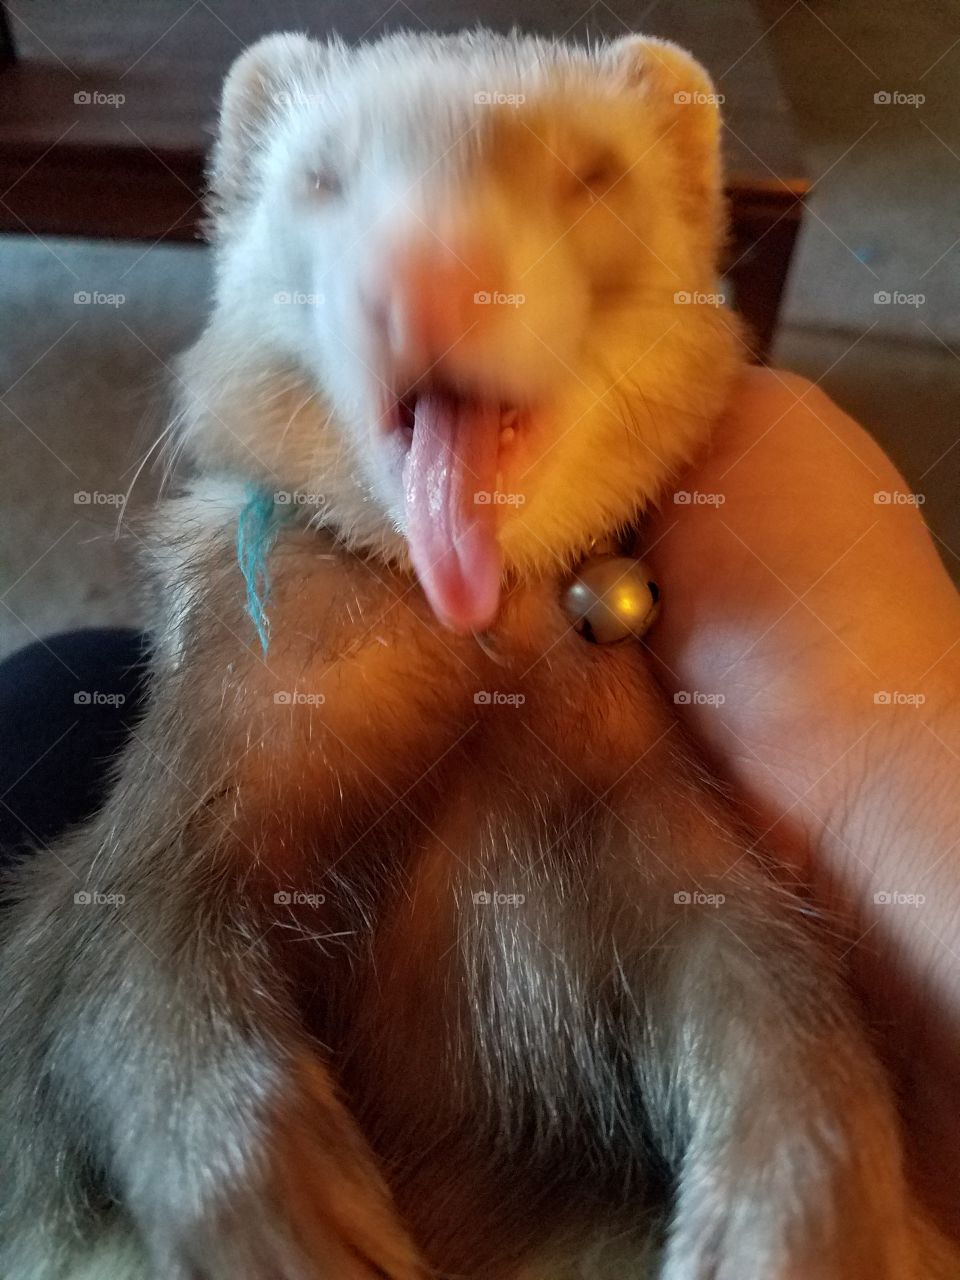 silly ferret